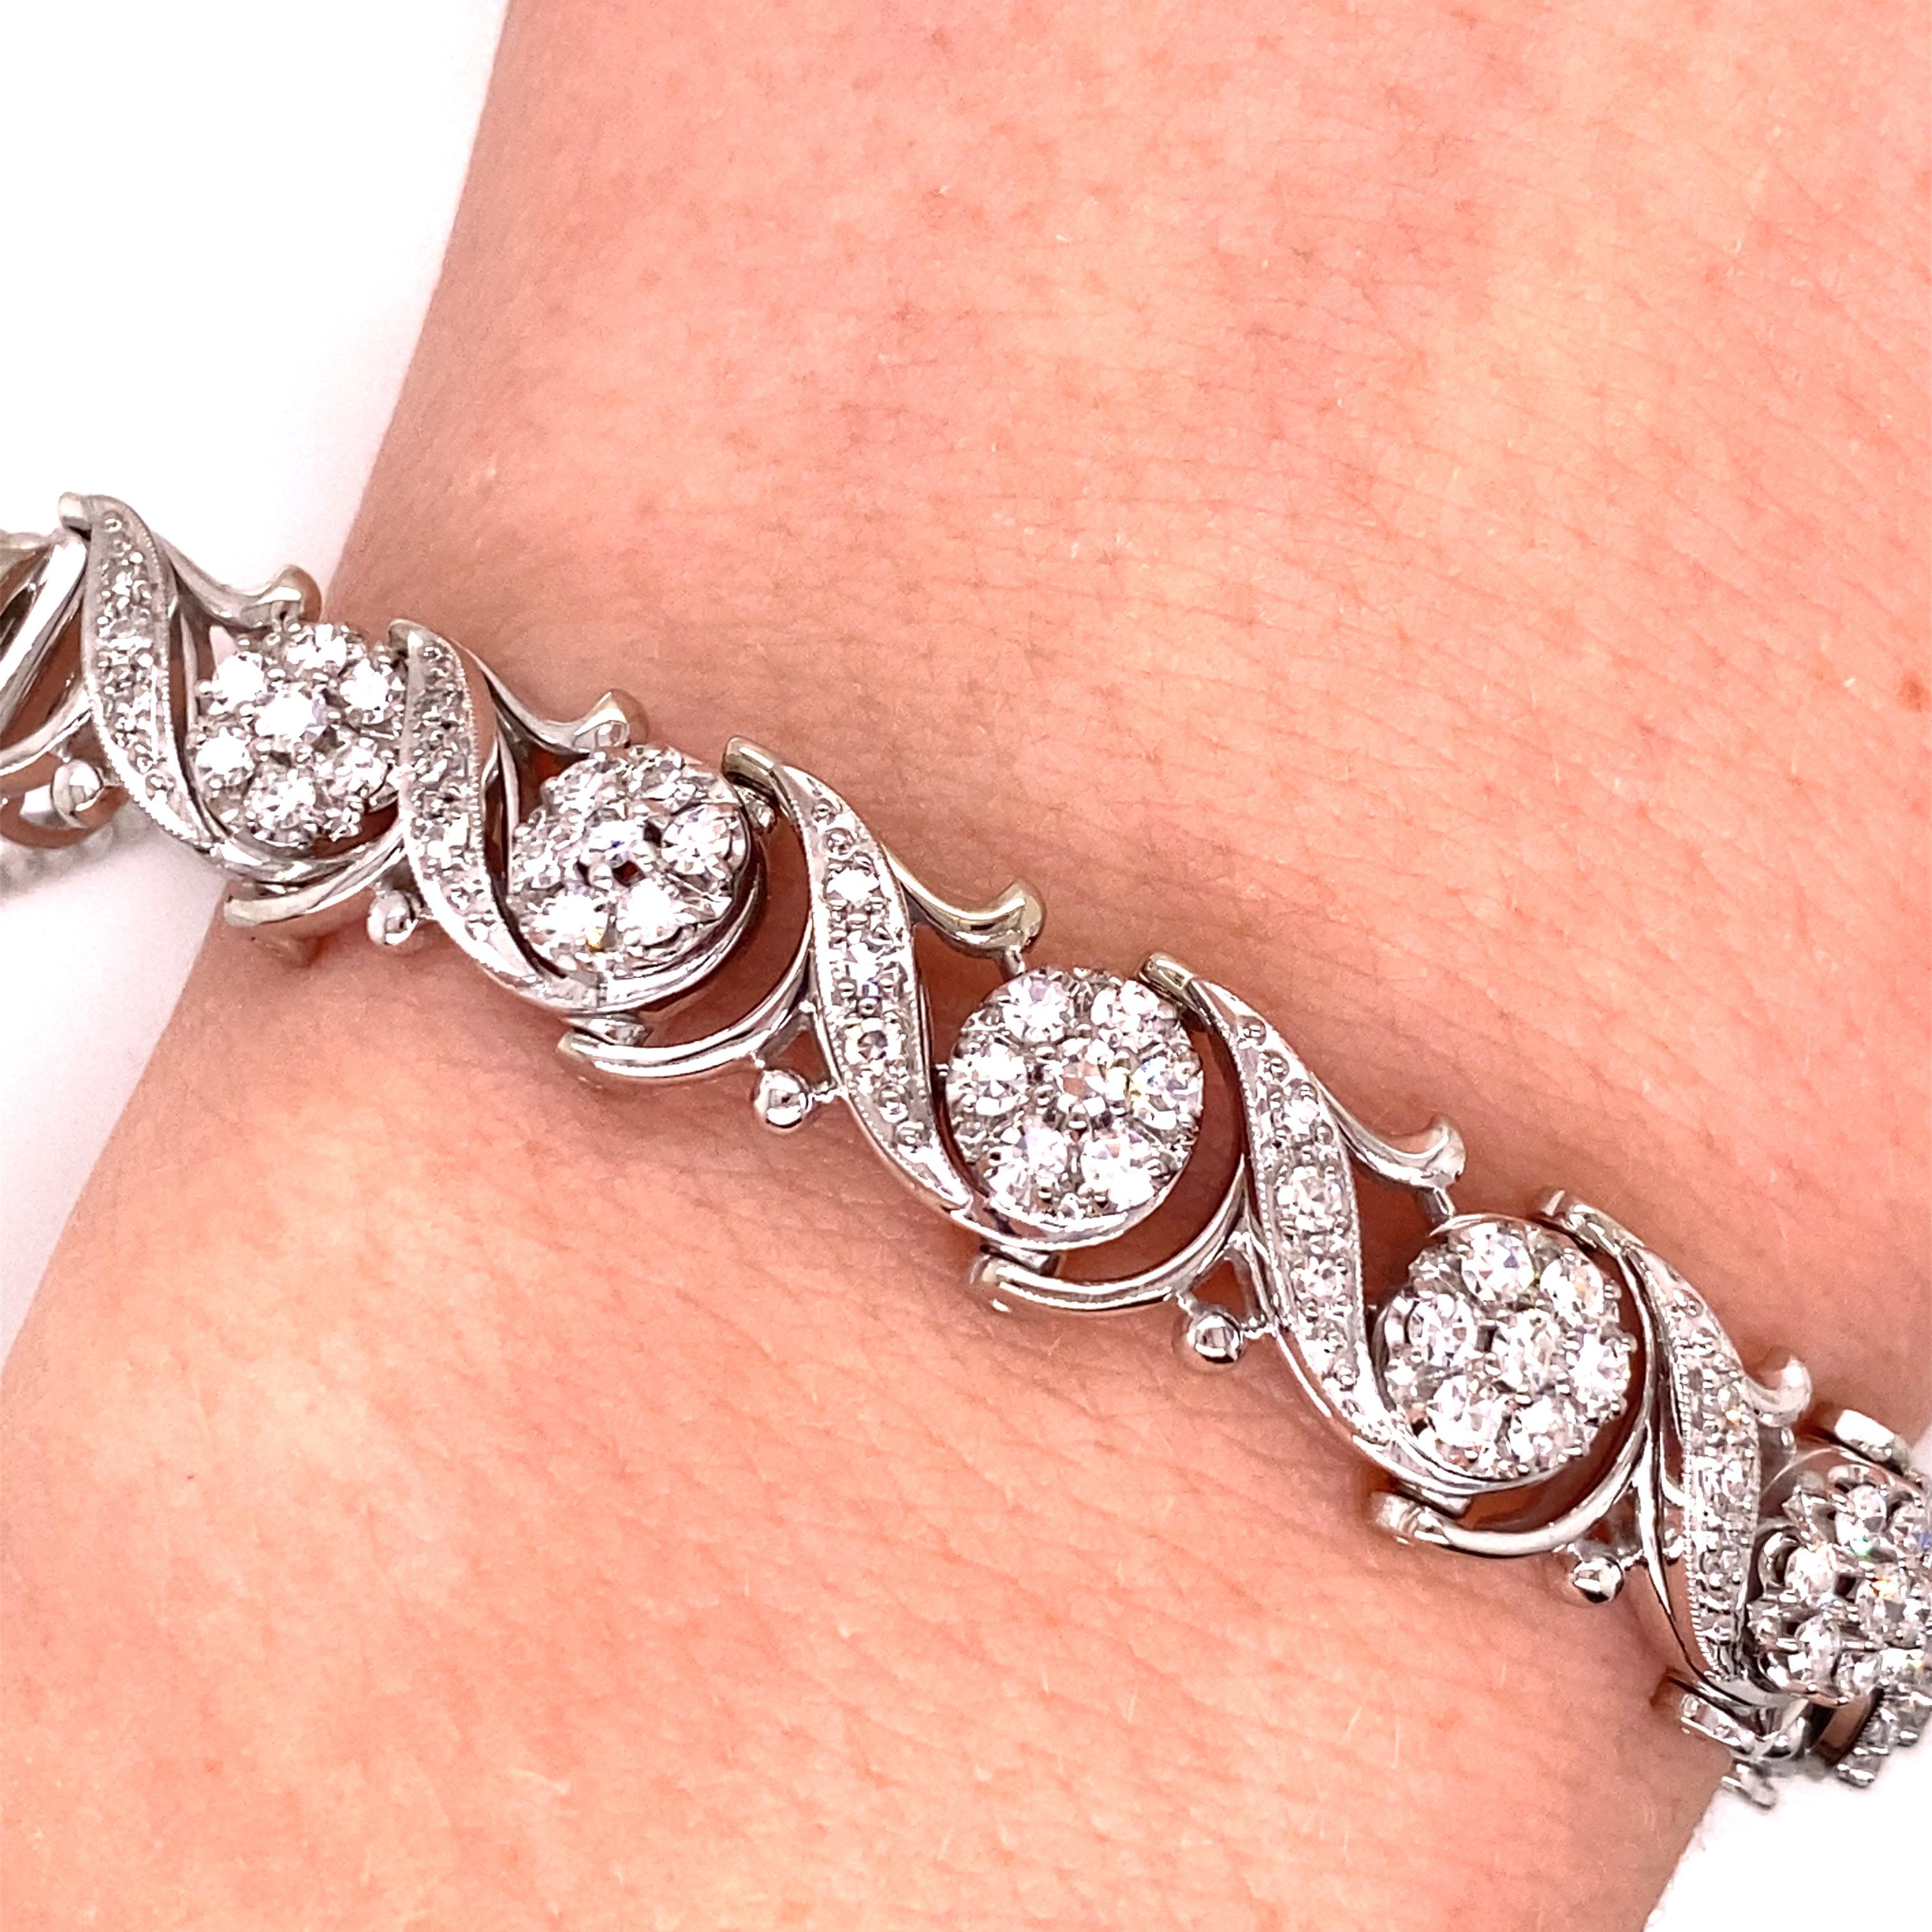 Vintage 1950's Jabel 18K White Gold Add-A-Section Diamond Bracelet 1.76ct - Le bracelet est de marque 